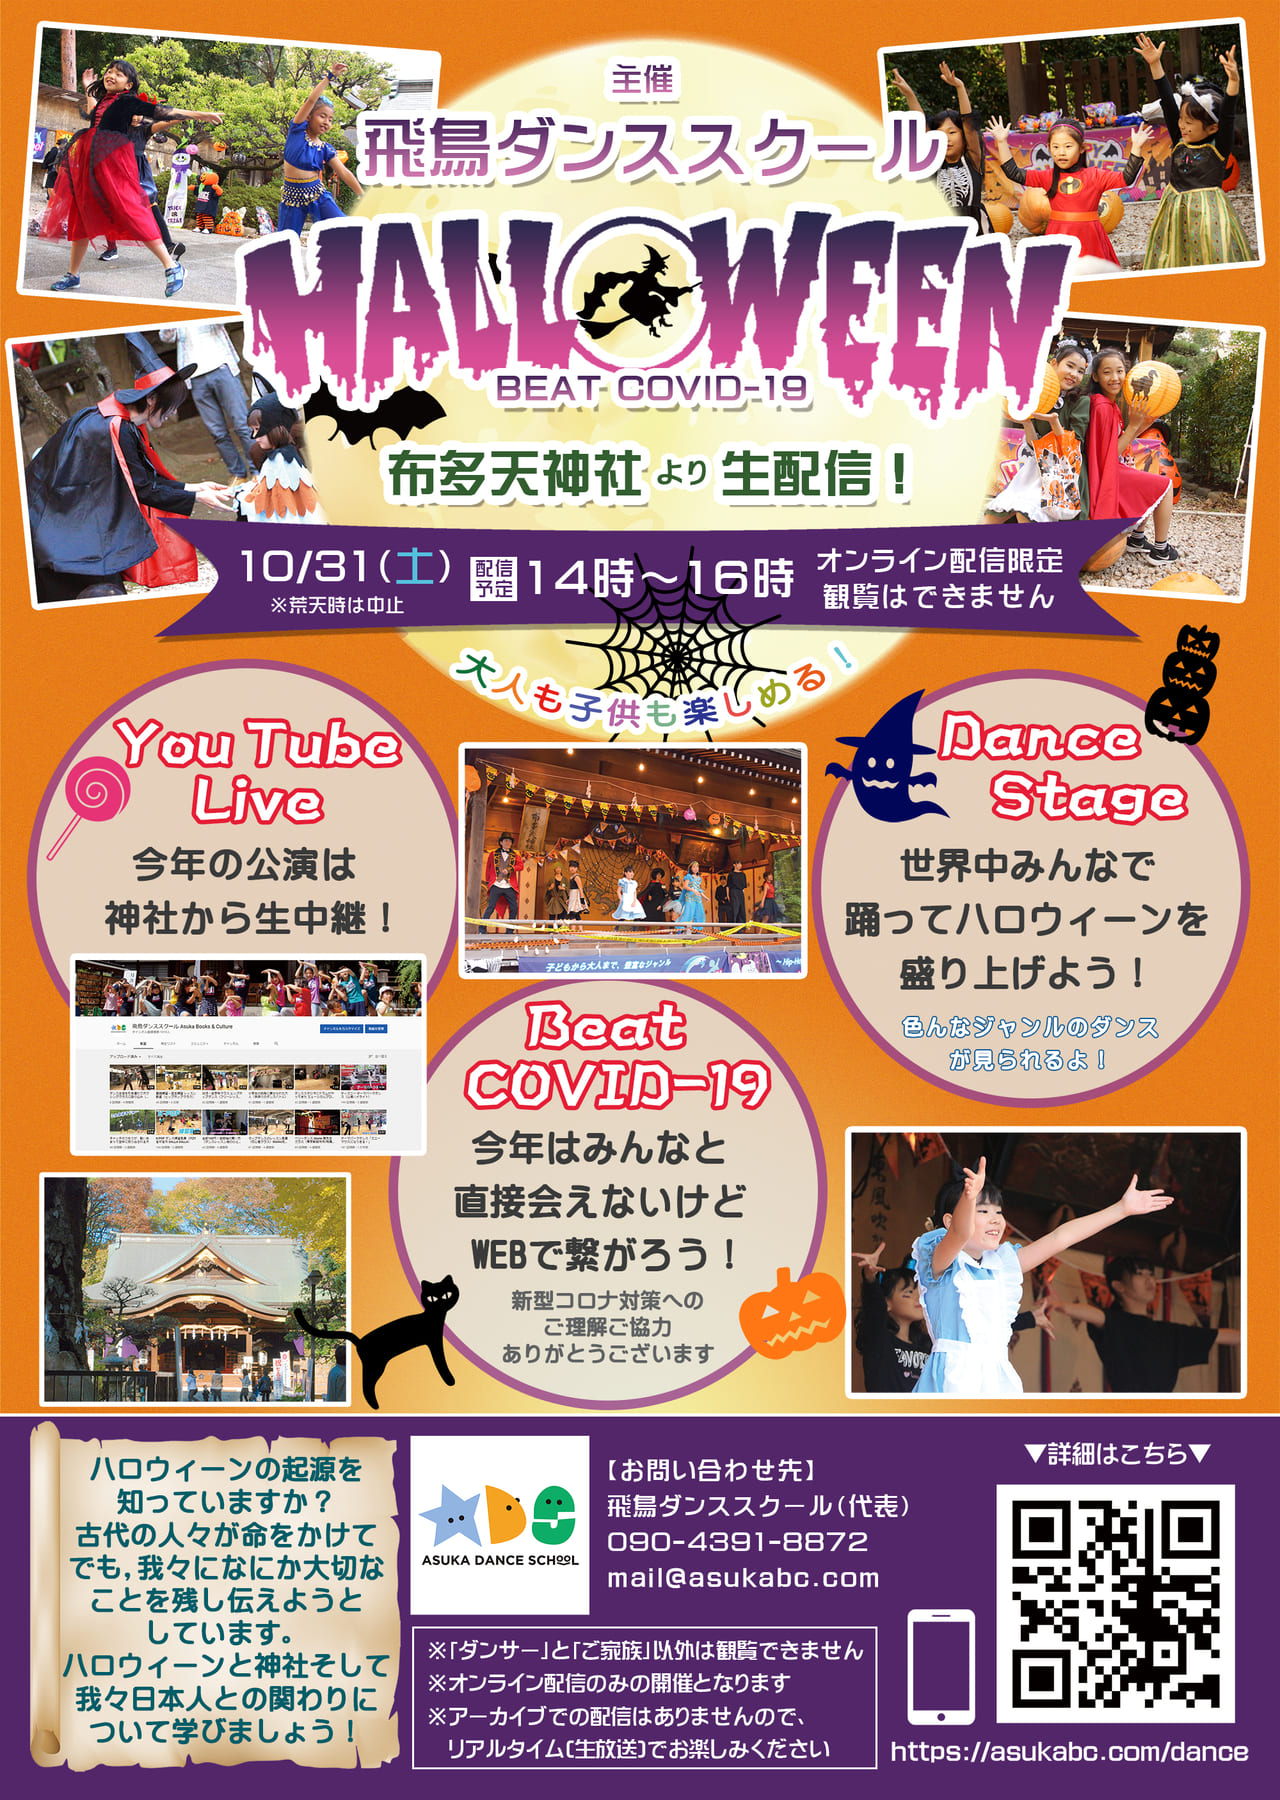 布田天神社で行われるダンススクールイベントが浜配信が行われます